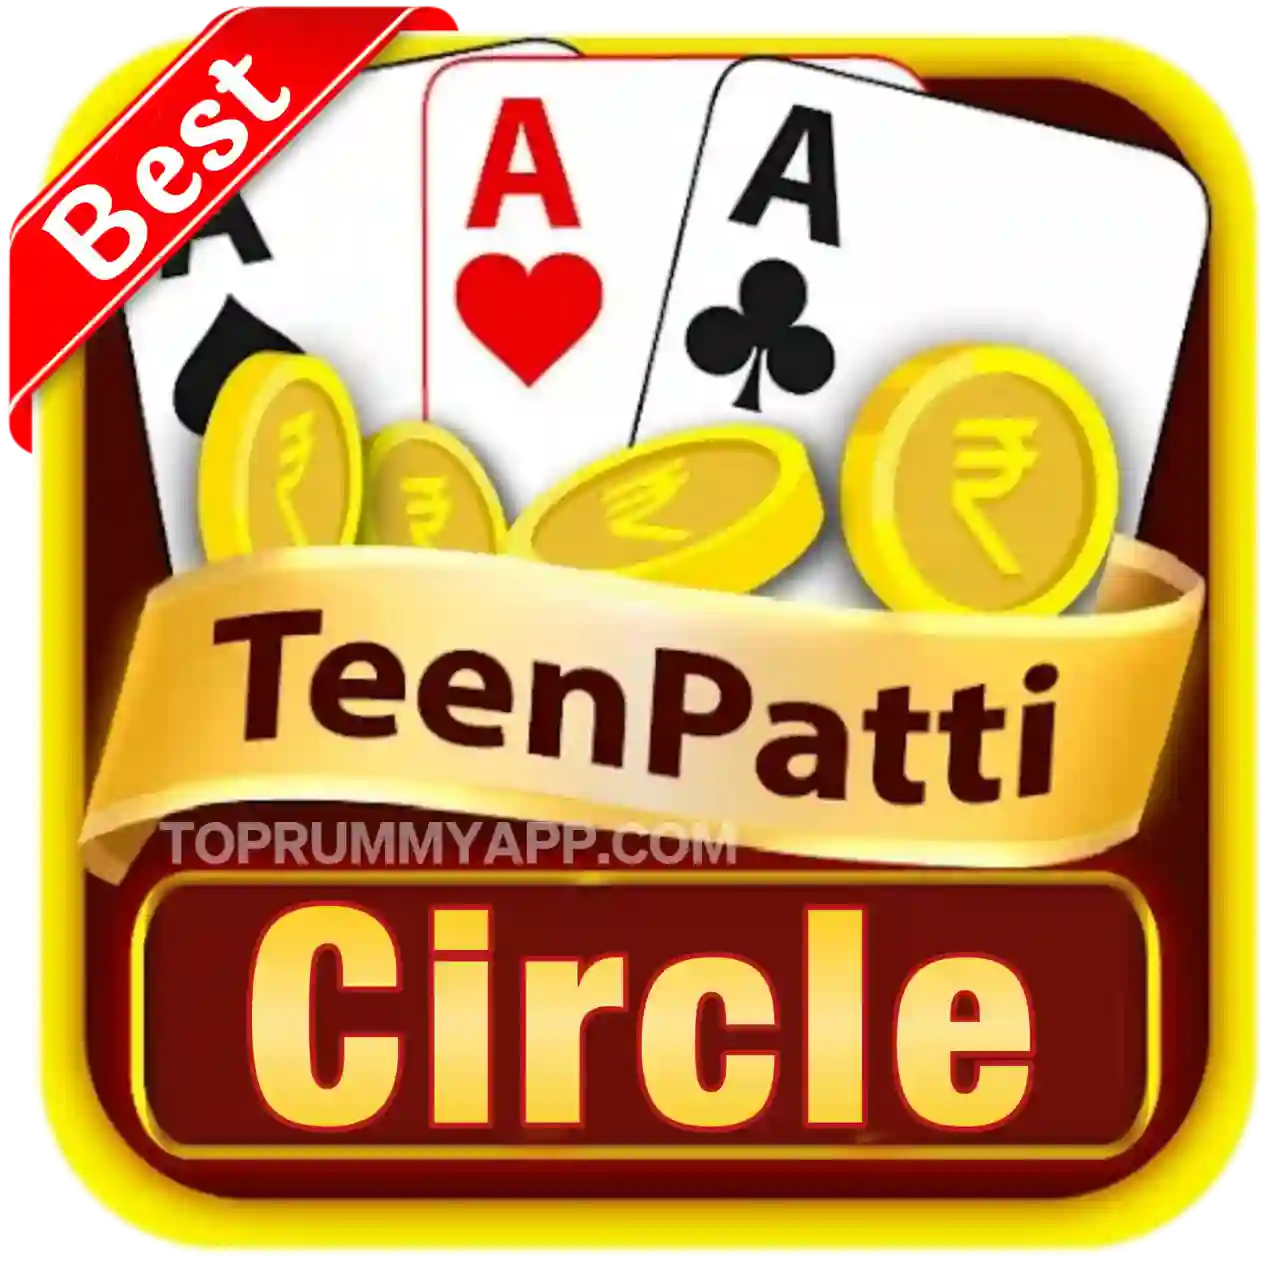 Teen Patti Circle App Download All Teen Patti App List ₹41 Bonus